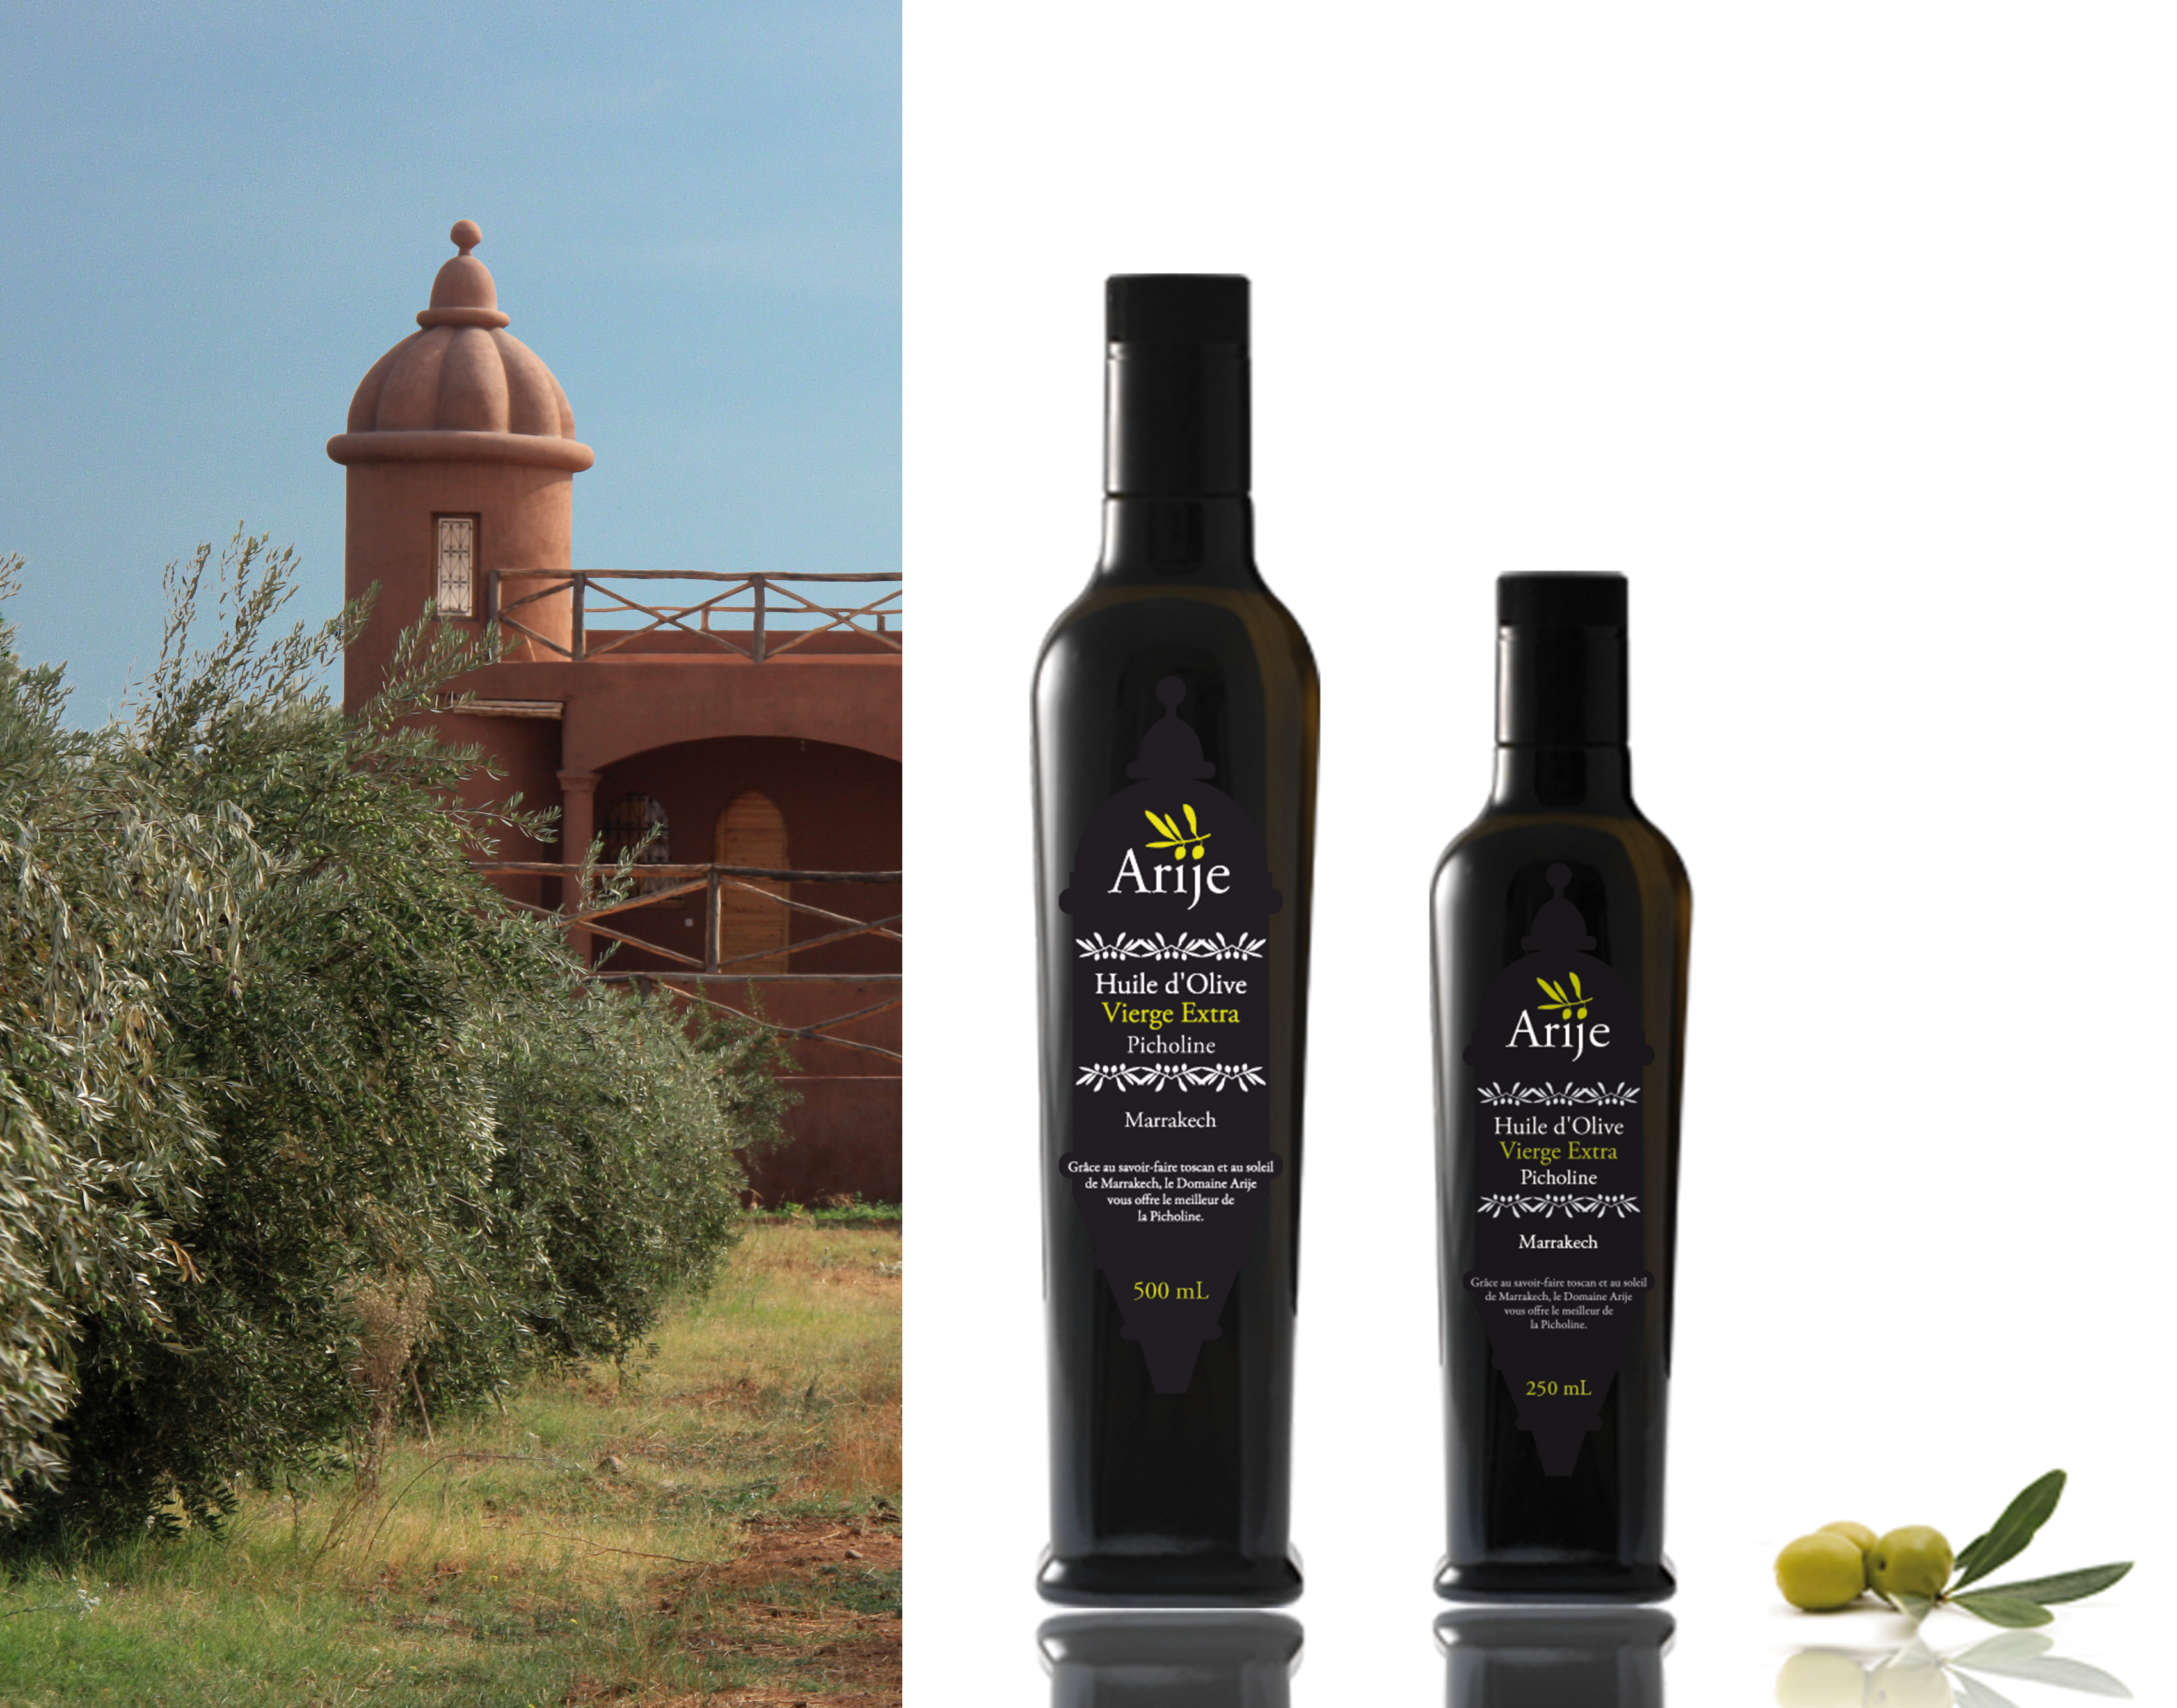 Le packaging est directement inspiré par les tours du Domaine / Our bottles’ label was inspired by the architecture of the Arije towers